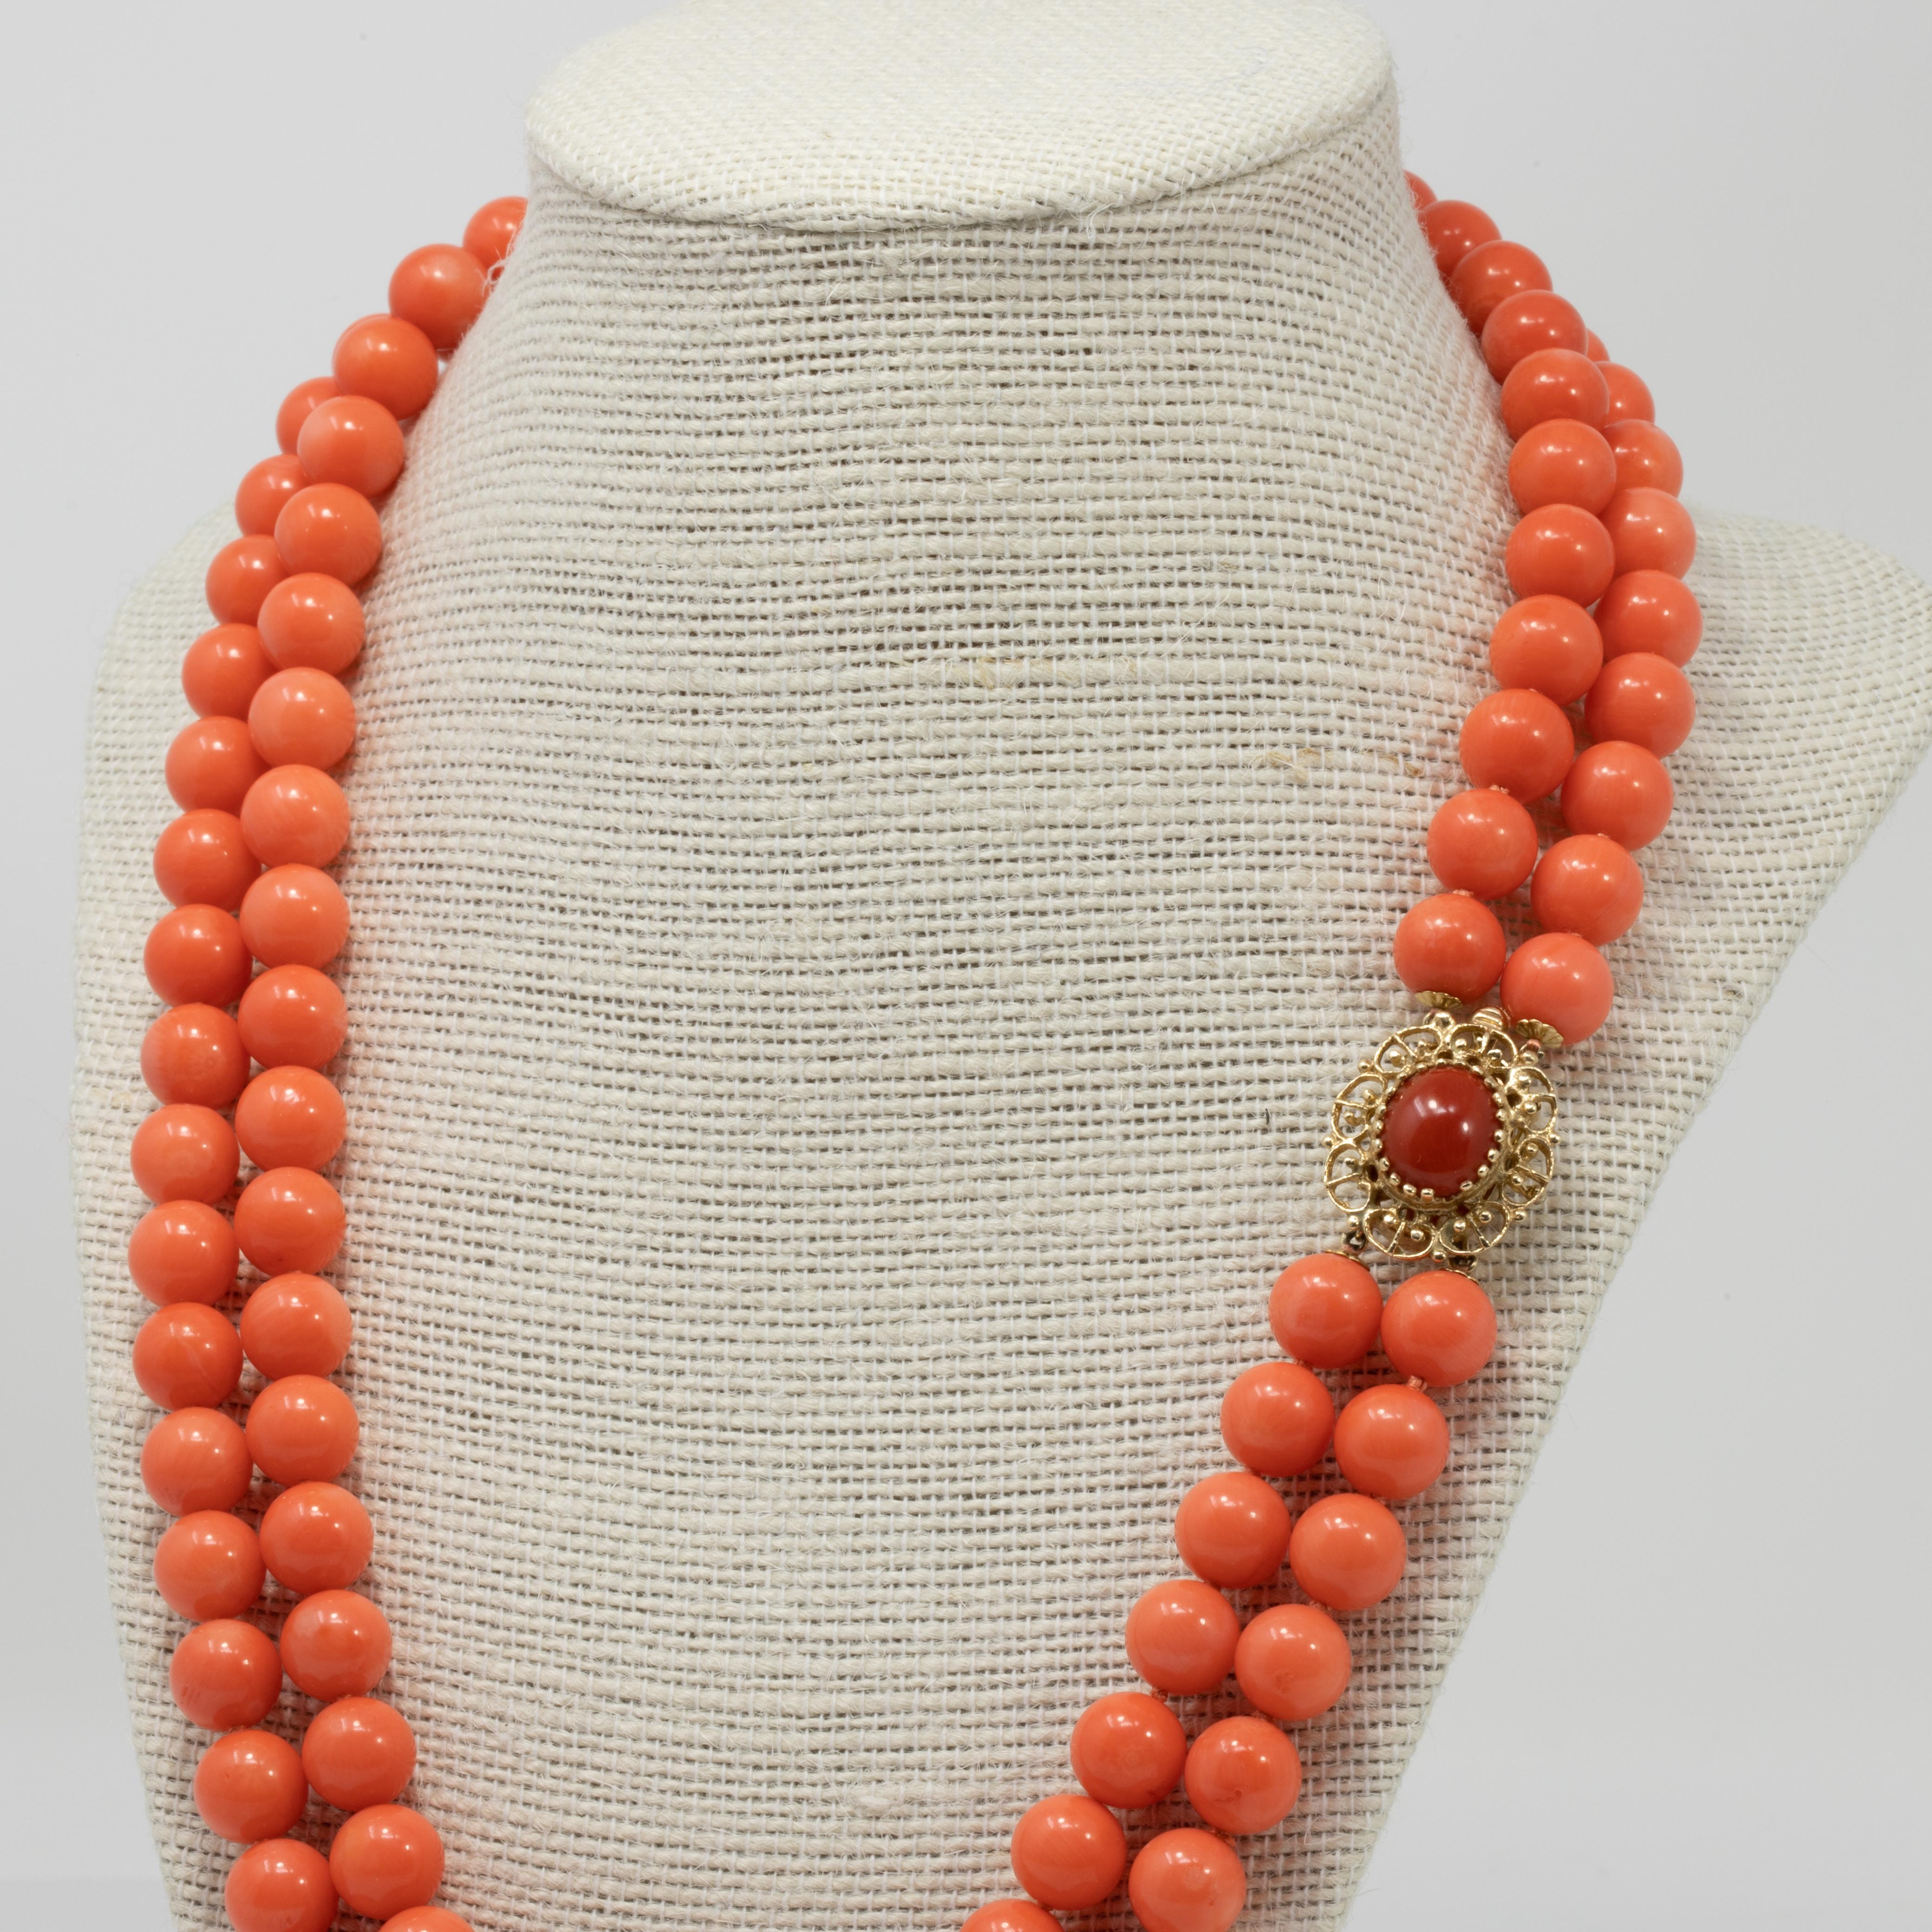 Eine elegante lachsfarbene Vintage-Korallenperlenkette. Sie besteht aus zwei Strängen mit Korallenperlen, die mit einem luxuriösen Verschluss aus 14 Karat Gelbgold verschlossen werden. In der Mitte befindet sich ein mit Zacken versehener